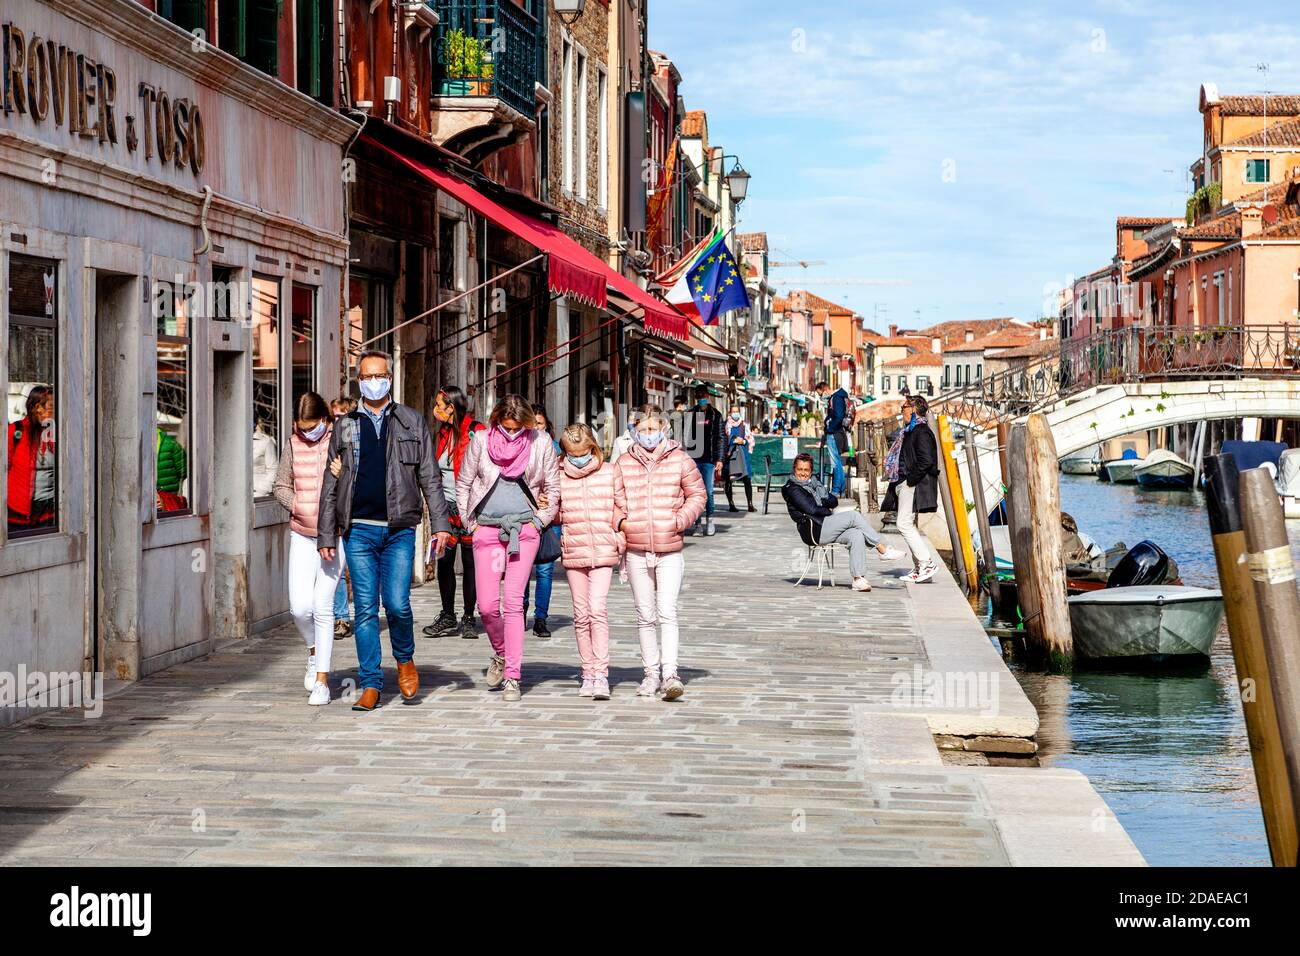 A Family On Vacation In Murano, Venice, Italy. Stock Photo